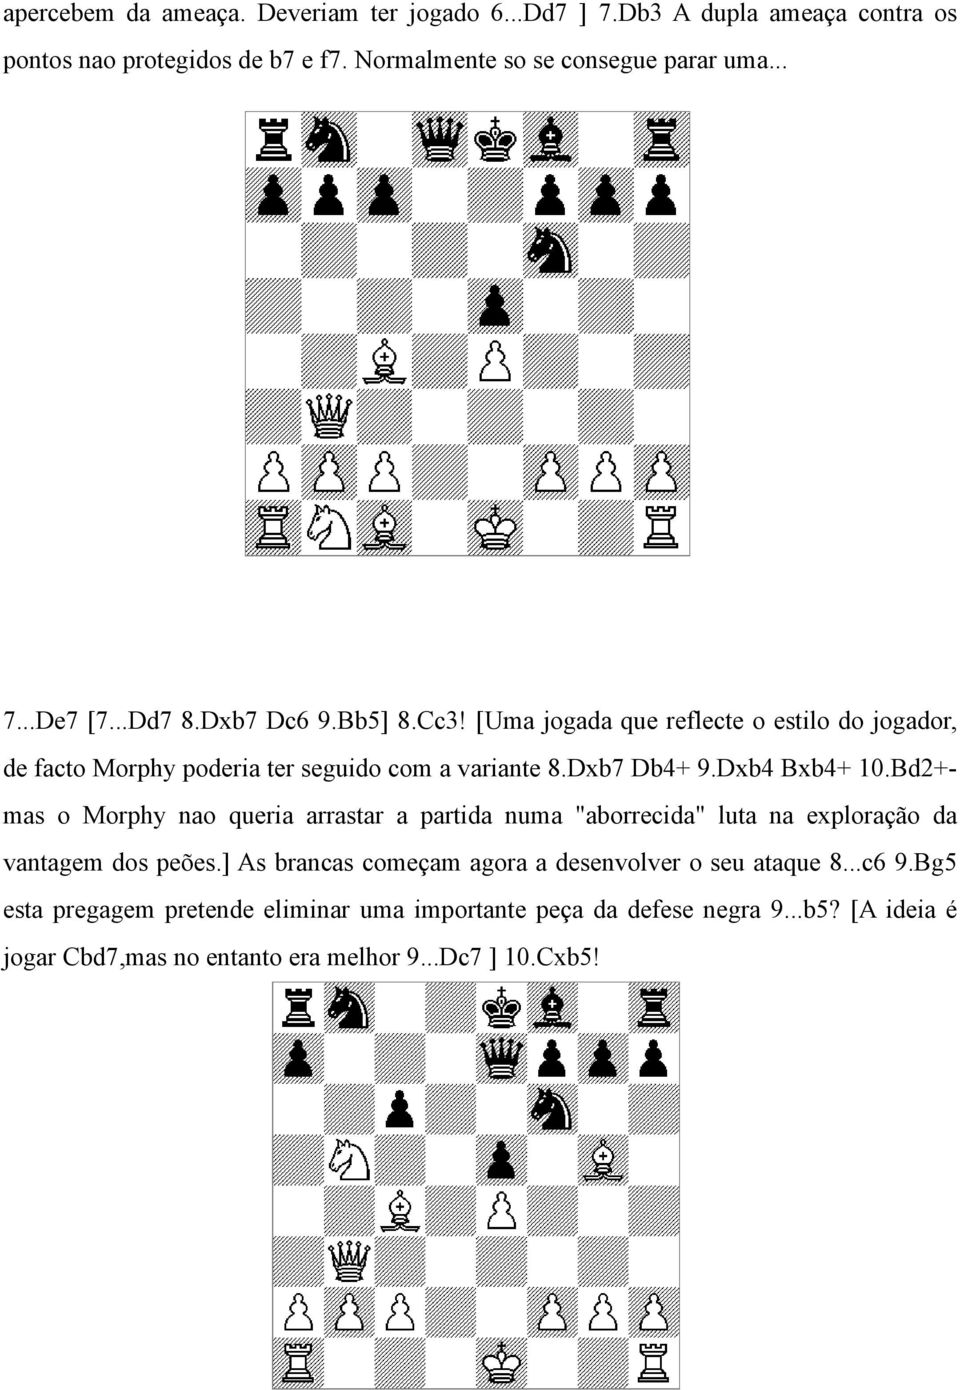 Bd2+mas o Morphy nao queria arrastar a partida numa "aborrecida" luta na exploração da vantagem dos peões.